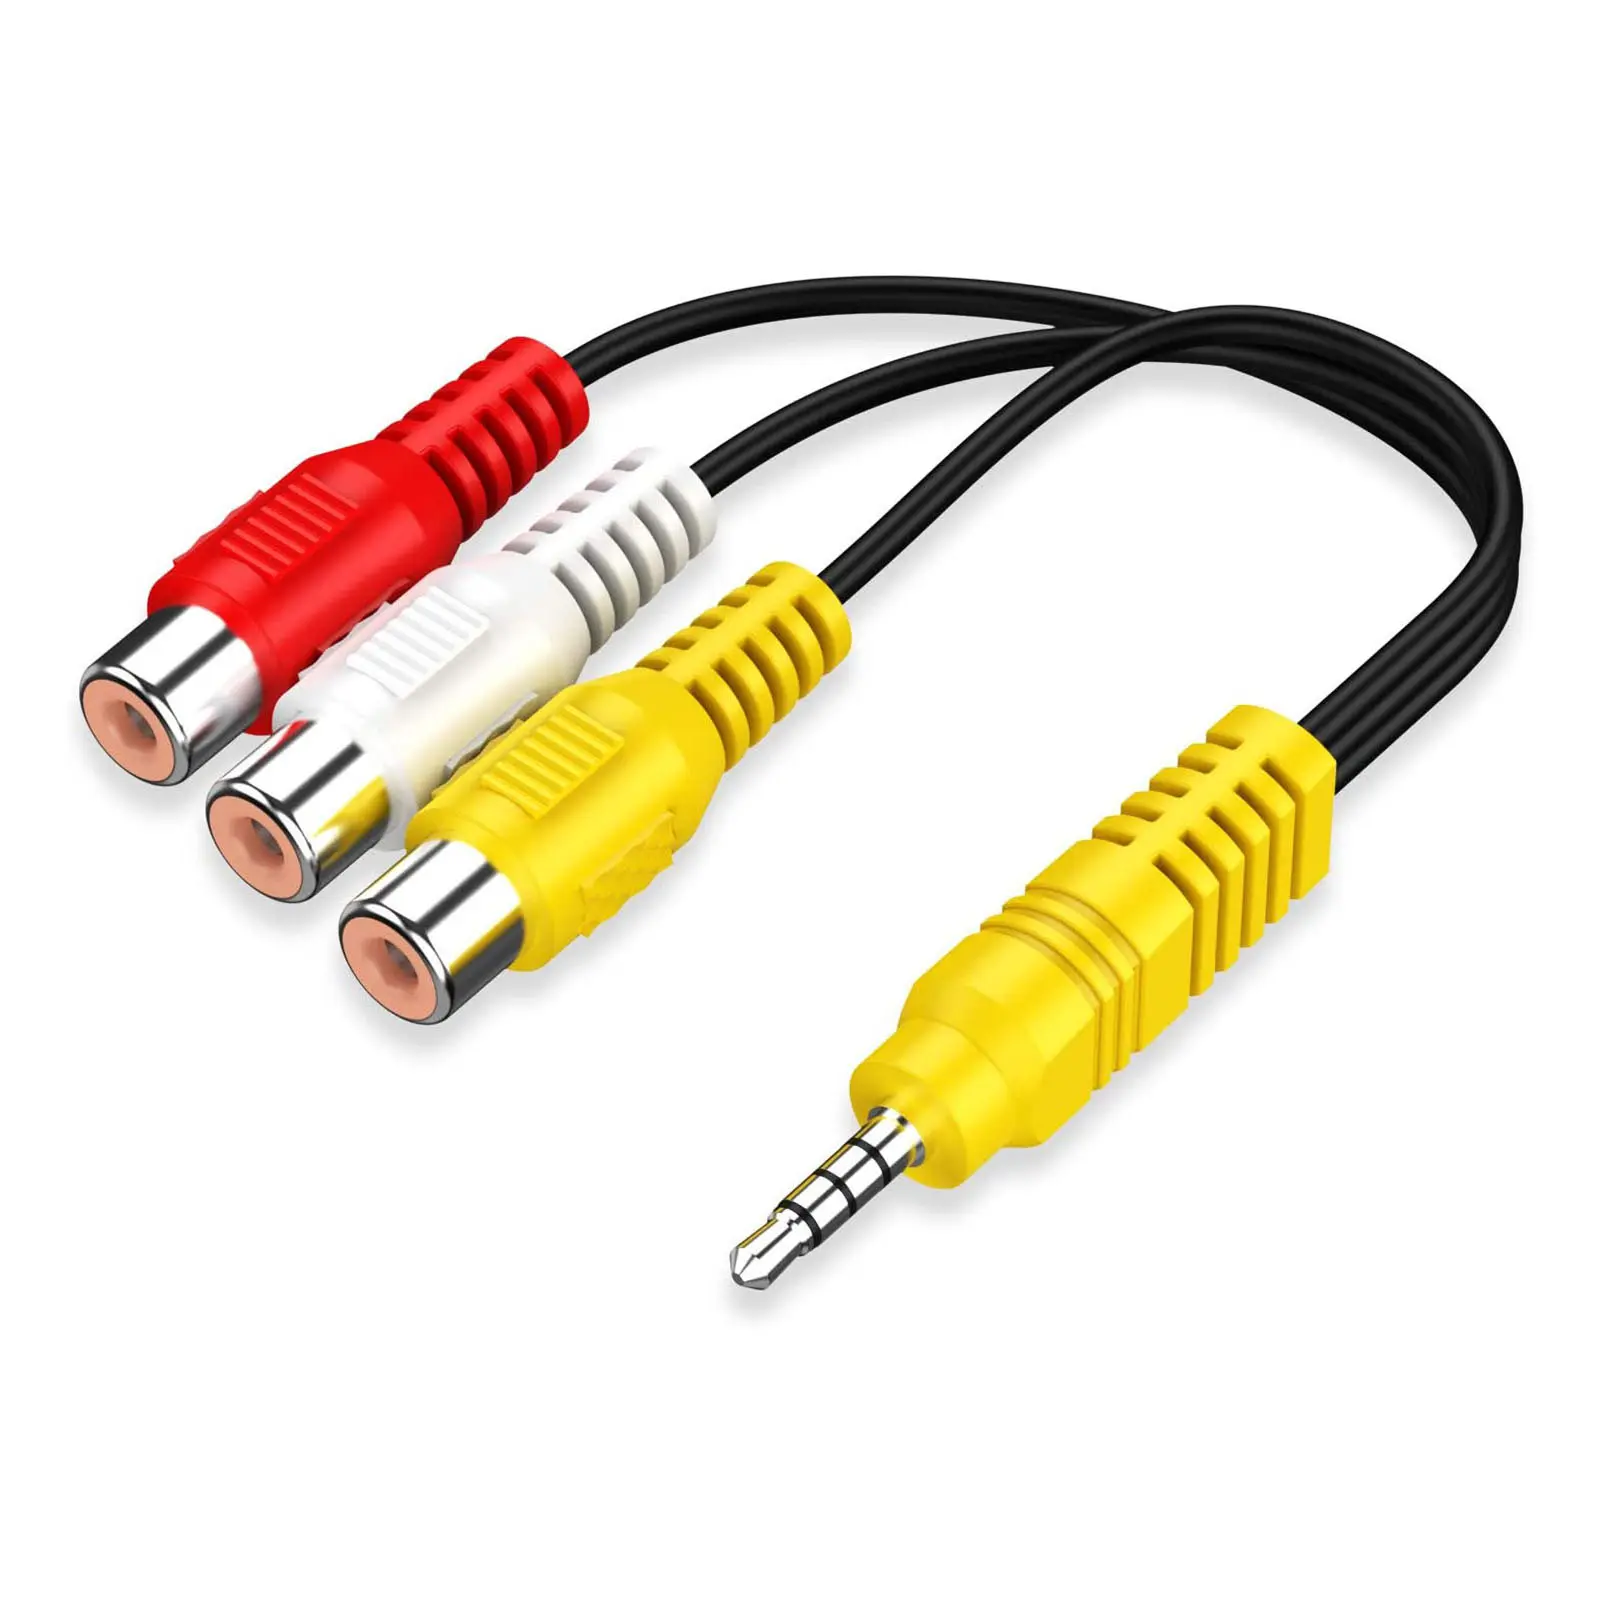 Cable adaptador de Audio y vídeo, conector macho estéreo de 3,5mm a 3 RCA hembra, para reproducción de vídeo de alto rendimiento y reproducción de Audio para TV TCL